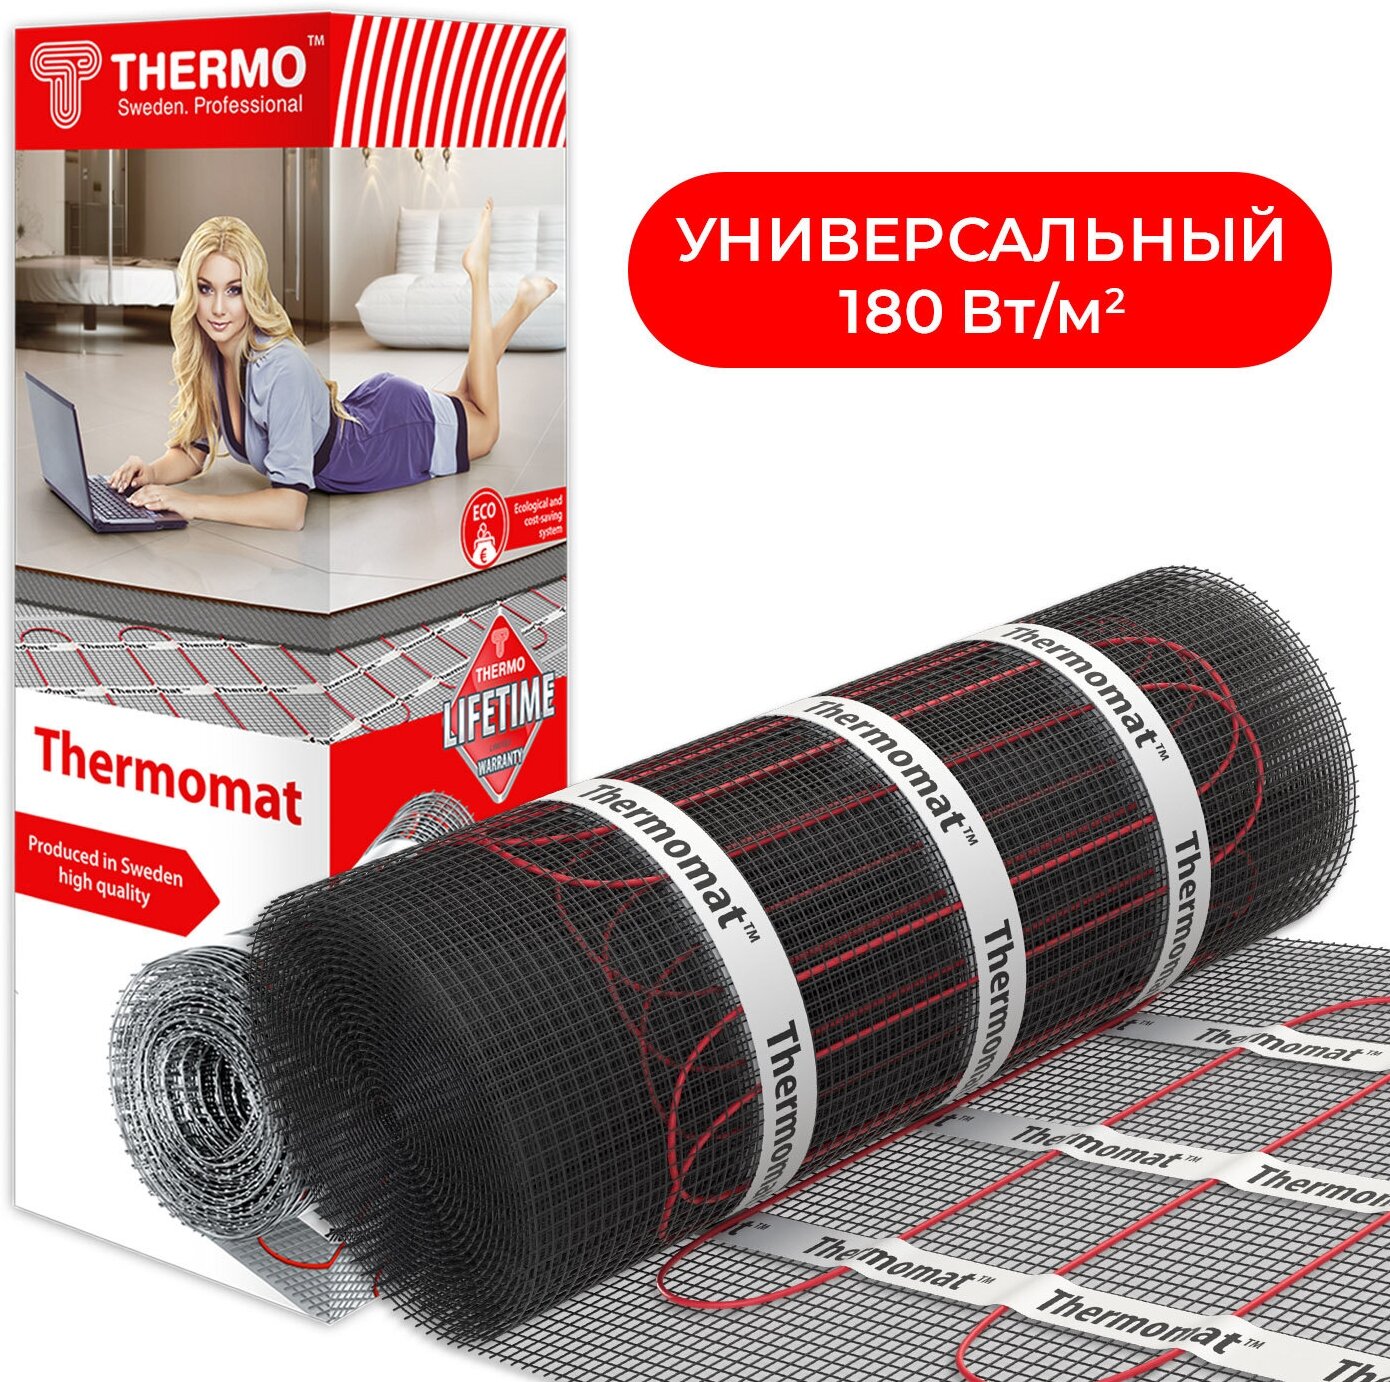 Нагревательный мат Thermomat TVK-180 2,5 м²